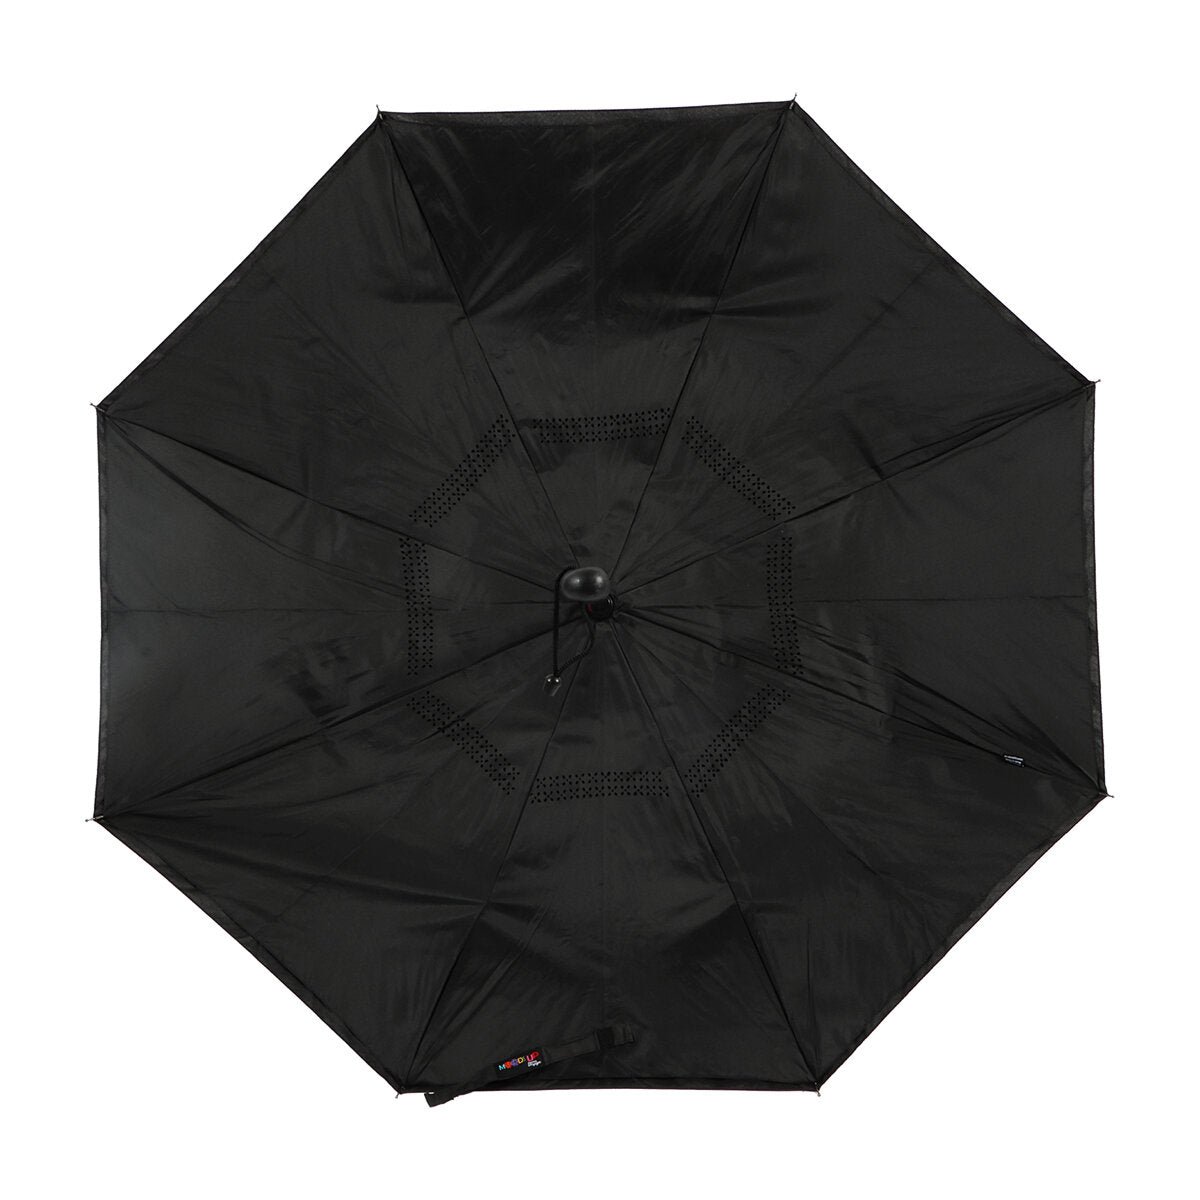 Biggdesign Moods Up Reverse Black Umbrella For Rain